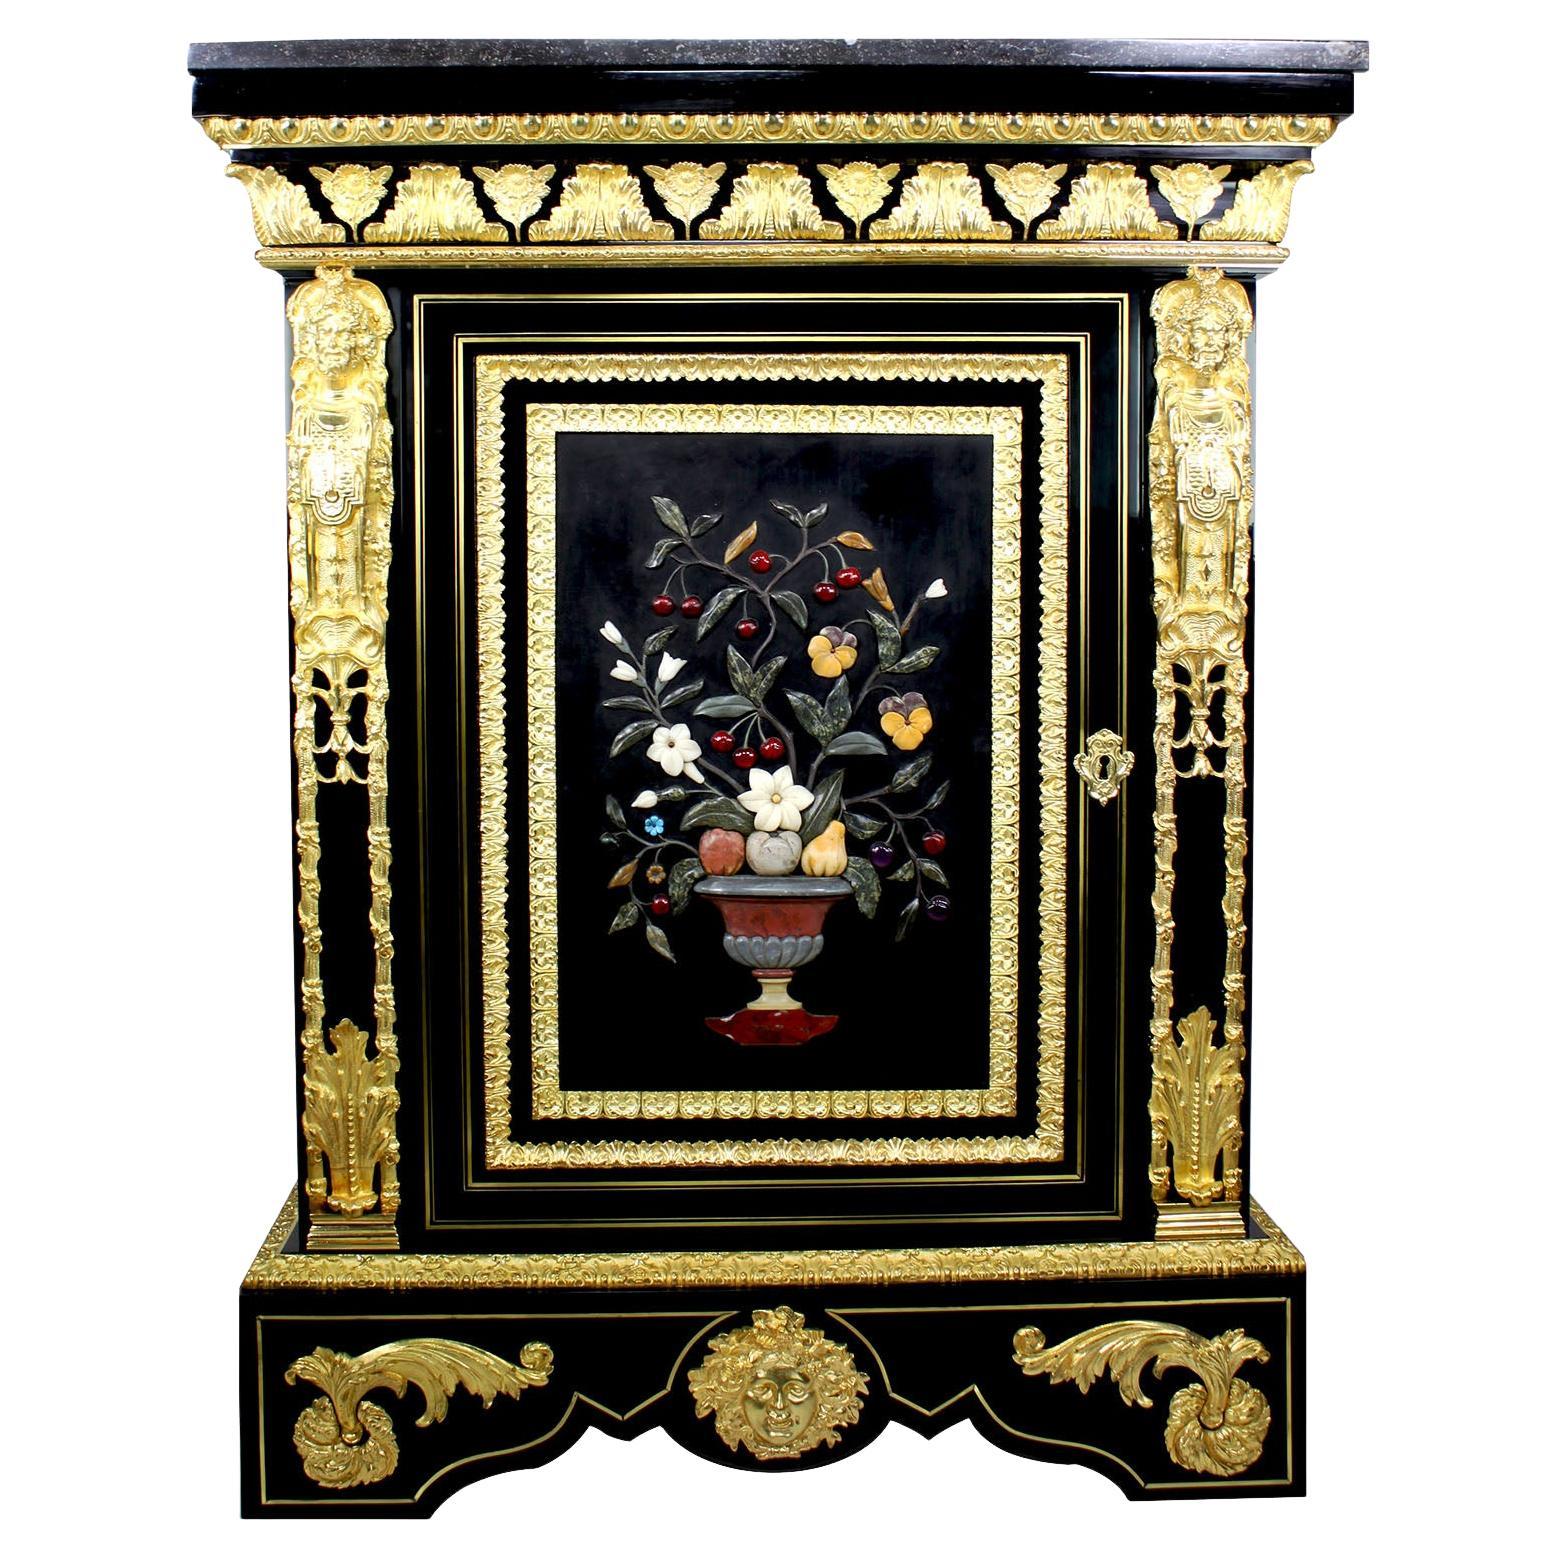 Beau cabinet français Napoléon III en bois ébonisé et pietra dura, monté sur bronze doré